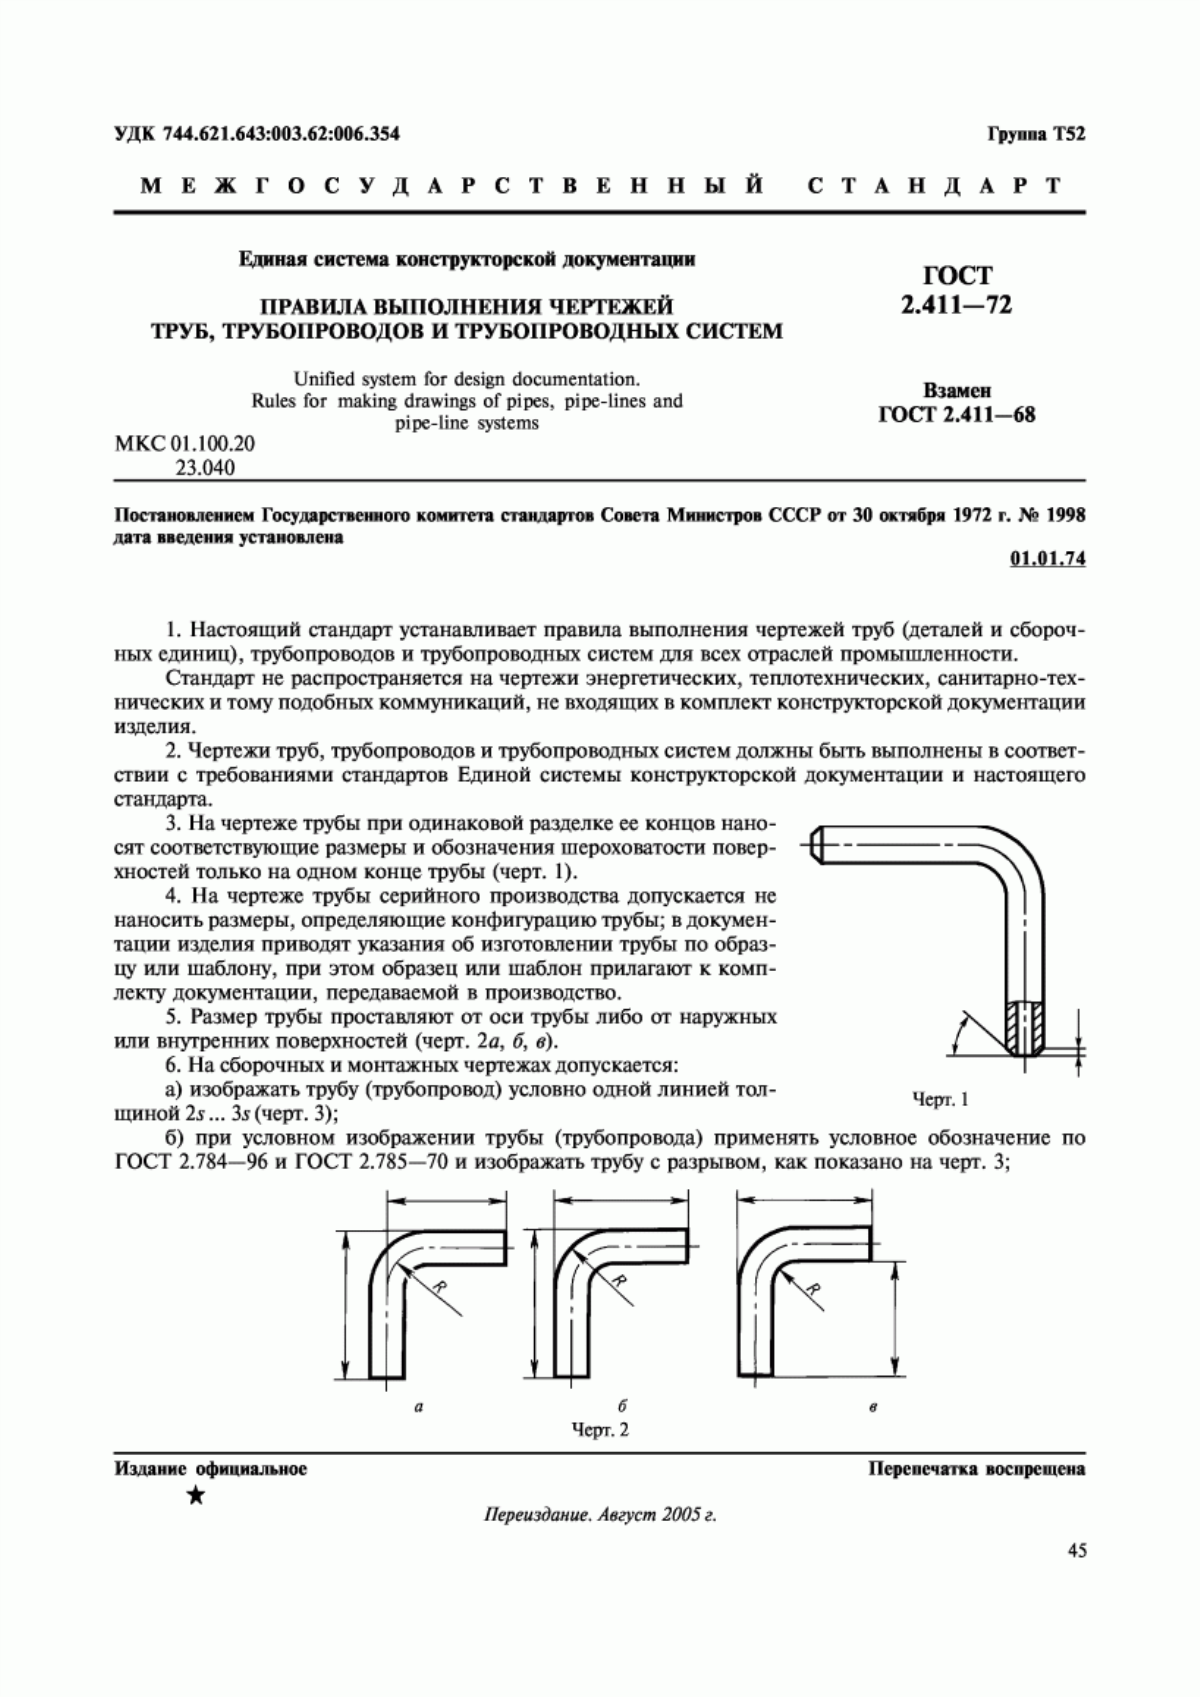 ГОСТ 2.411-72 Единая система конструкторской документации. Правила выполнения чертежей труб, трубопроводов и трубопроводных систем